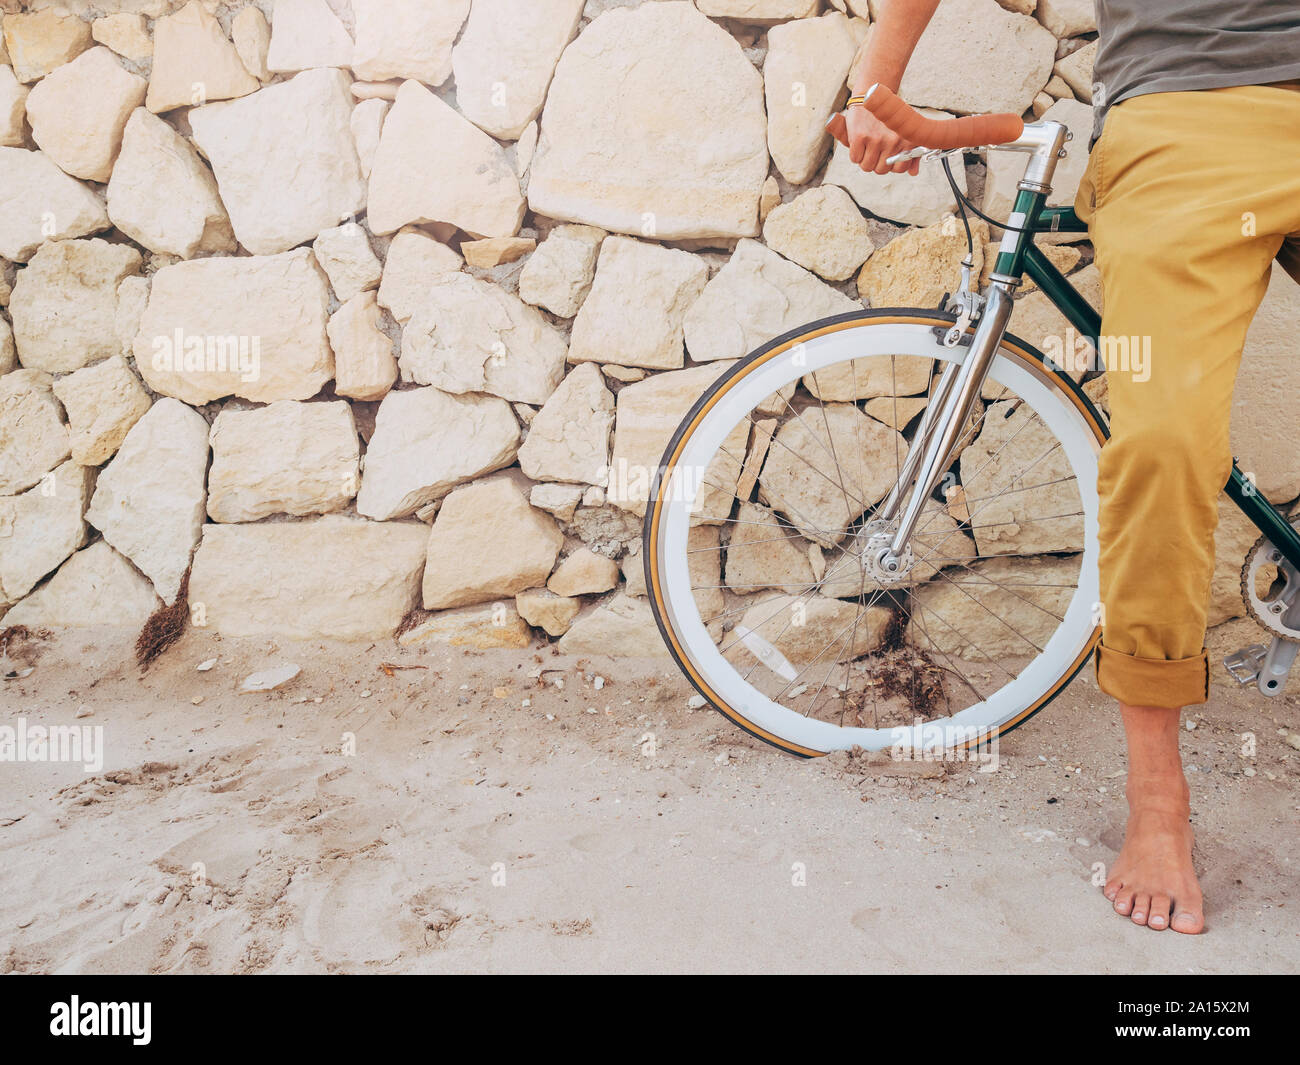 A piedi nudi uomo con Fixie bike davanti al muro di pietra naturale sulla spiaggia, vista parziale Foto Stock